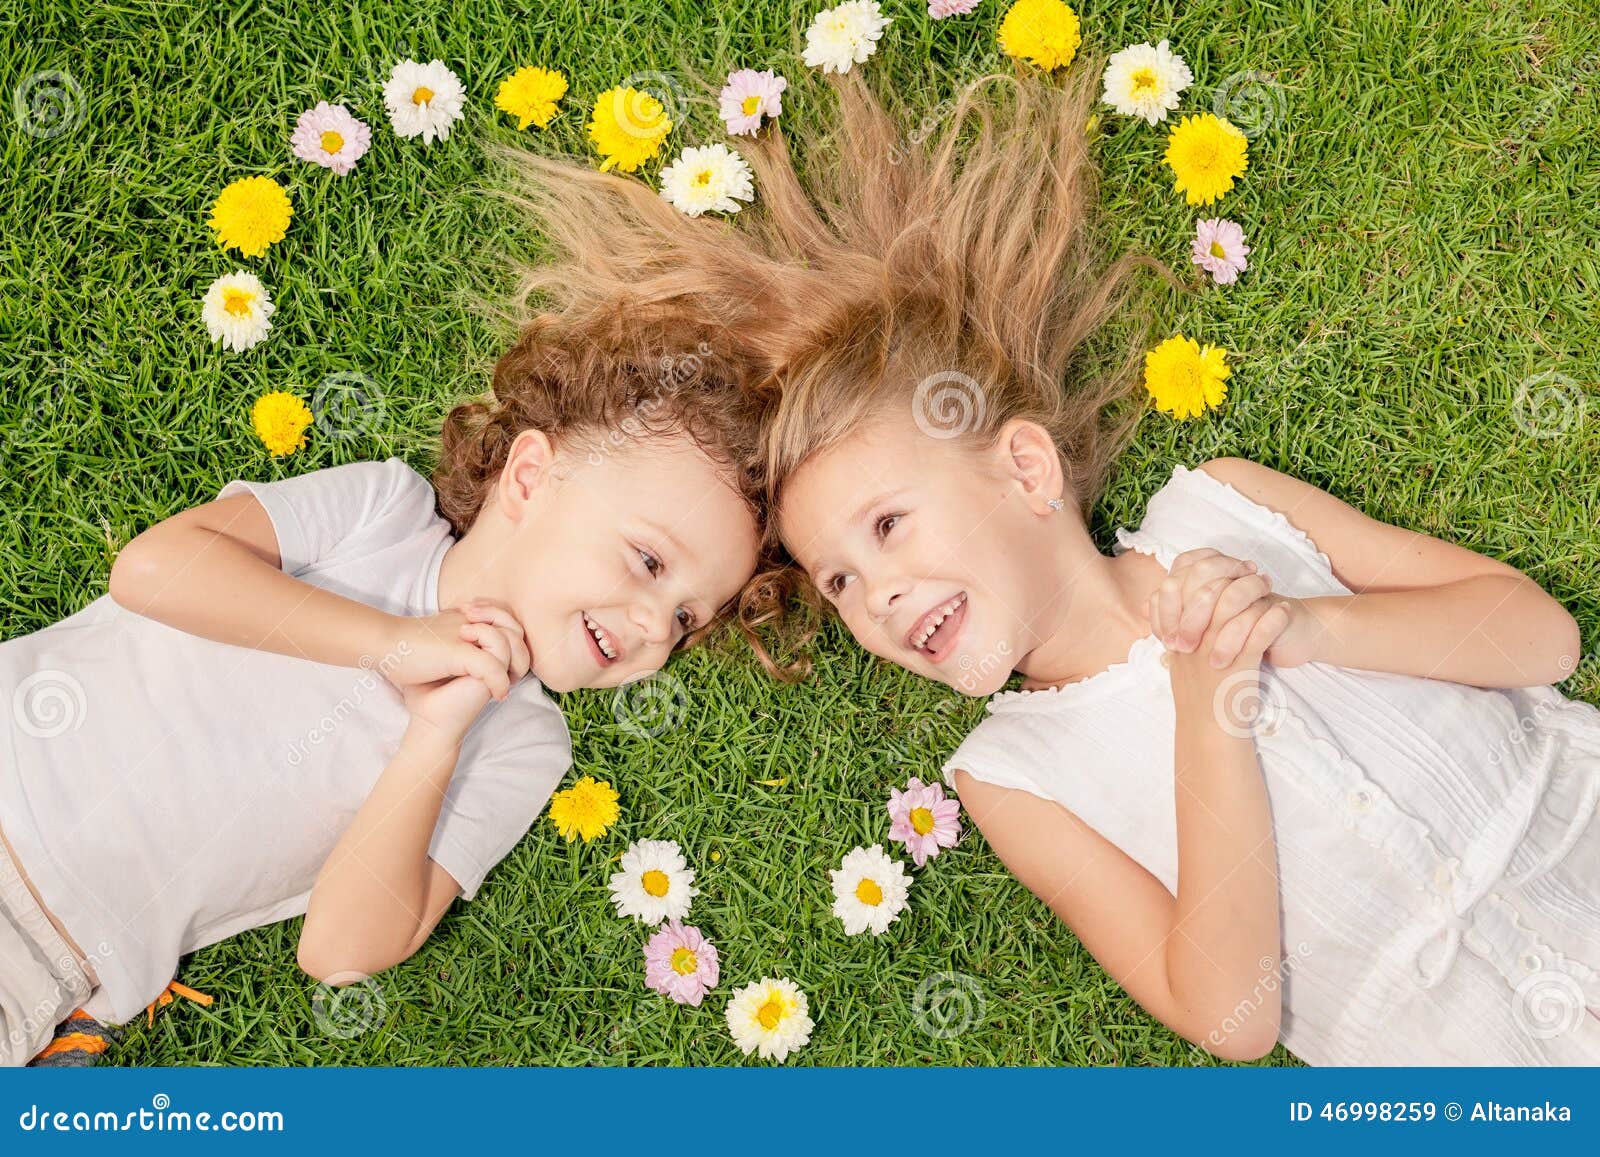 Lycklig pys och flicka som ligger på gräset på dagtiden Begrepp av en syskongruppför evigt Hjärta som läggas ut på gräset av färgerna, begreppet av valentin dag